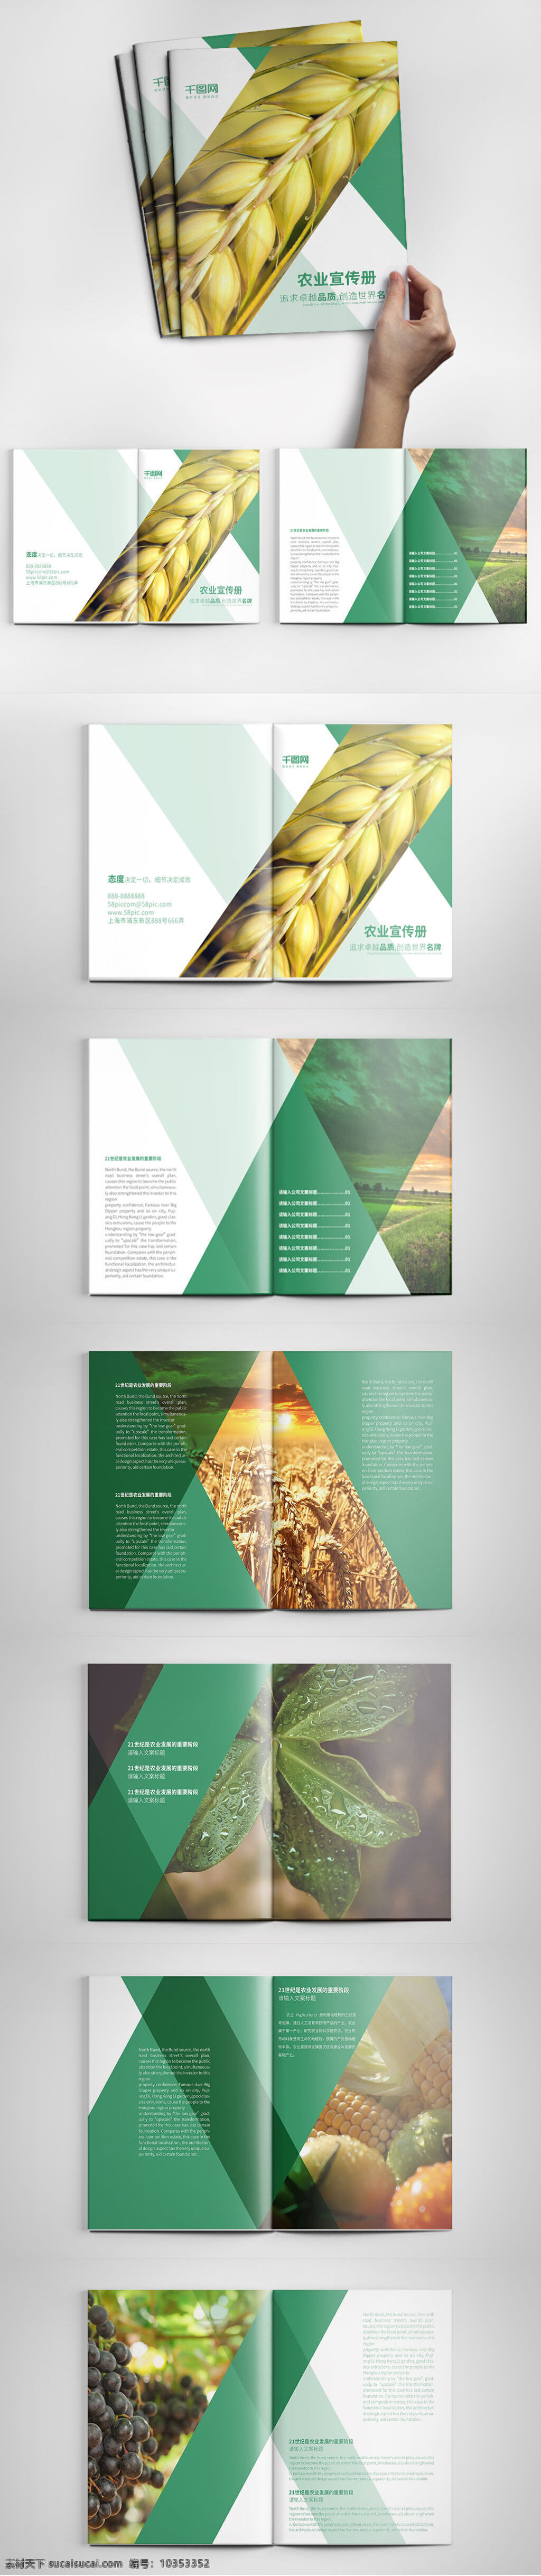 绿色农业 宣传画 册设计 模板 大气画册 公司宣传画册 画册设计 绿色画册 农产品画册 农业画册 企业画册